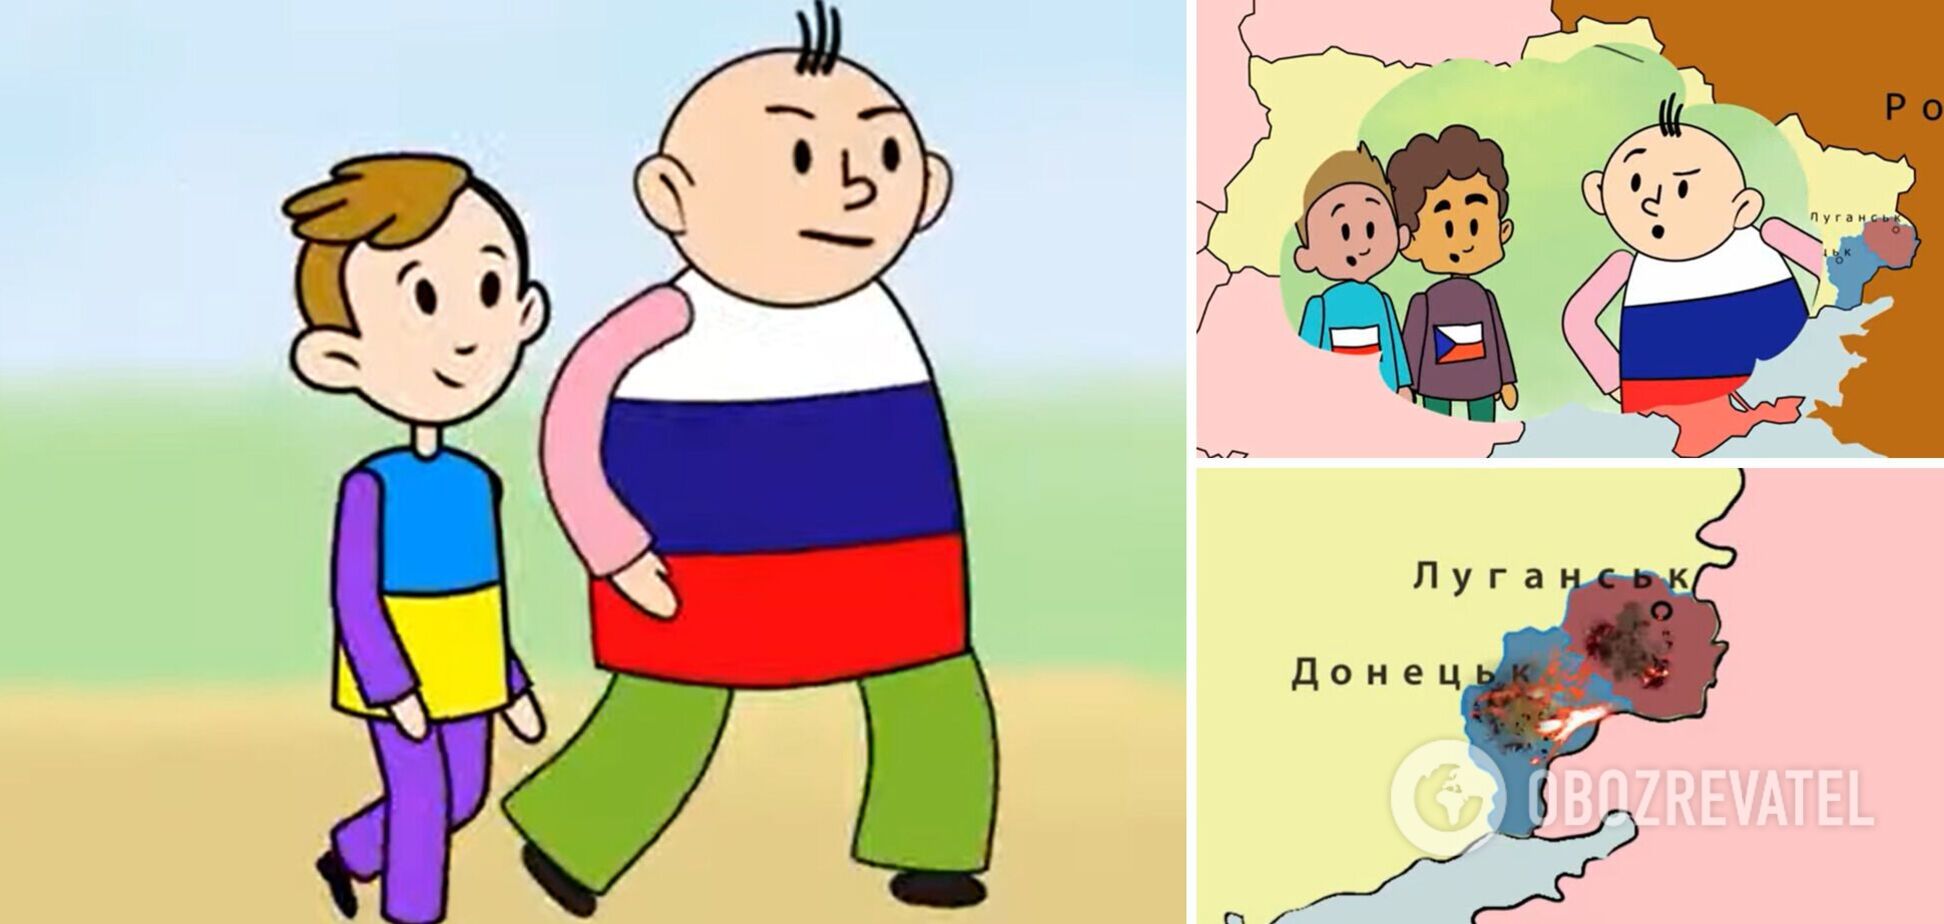 Українці створили свій мультфільм про Івана та Миколу в відповідь на кремлівську пропаганду